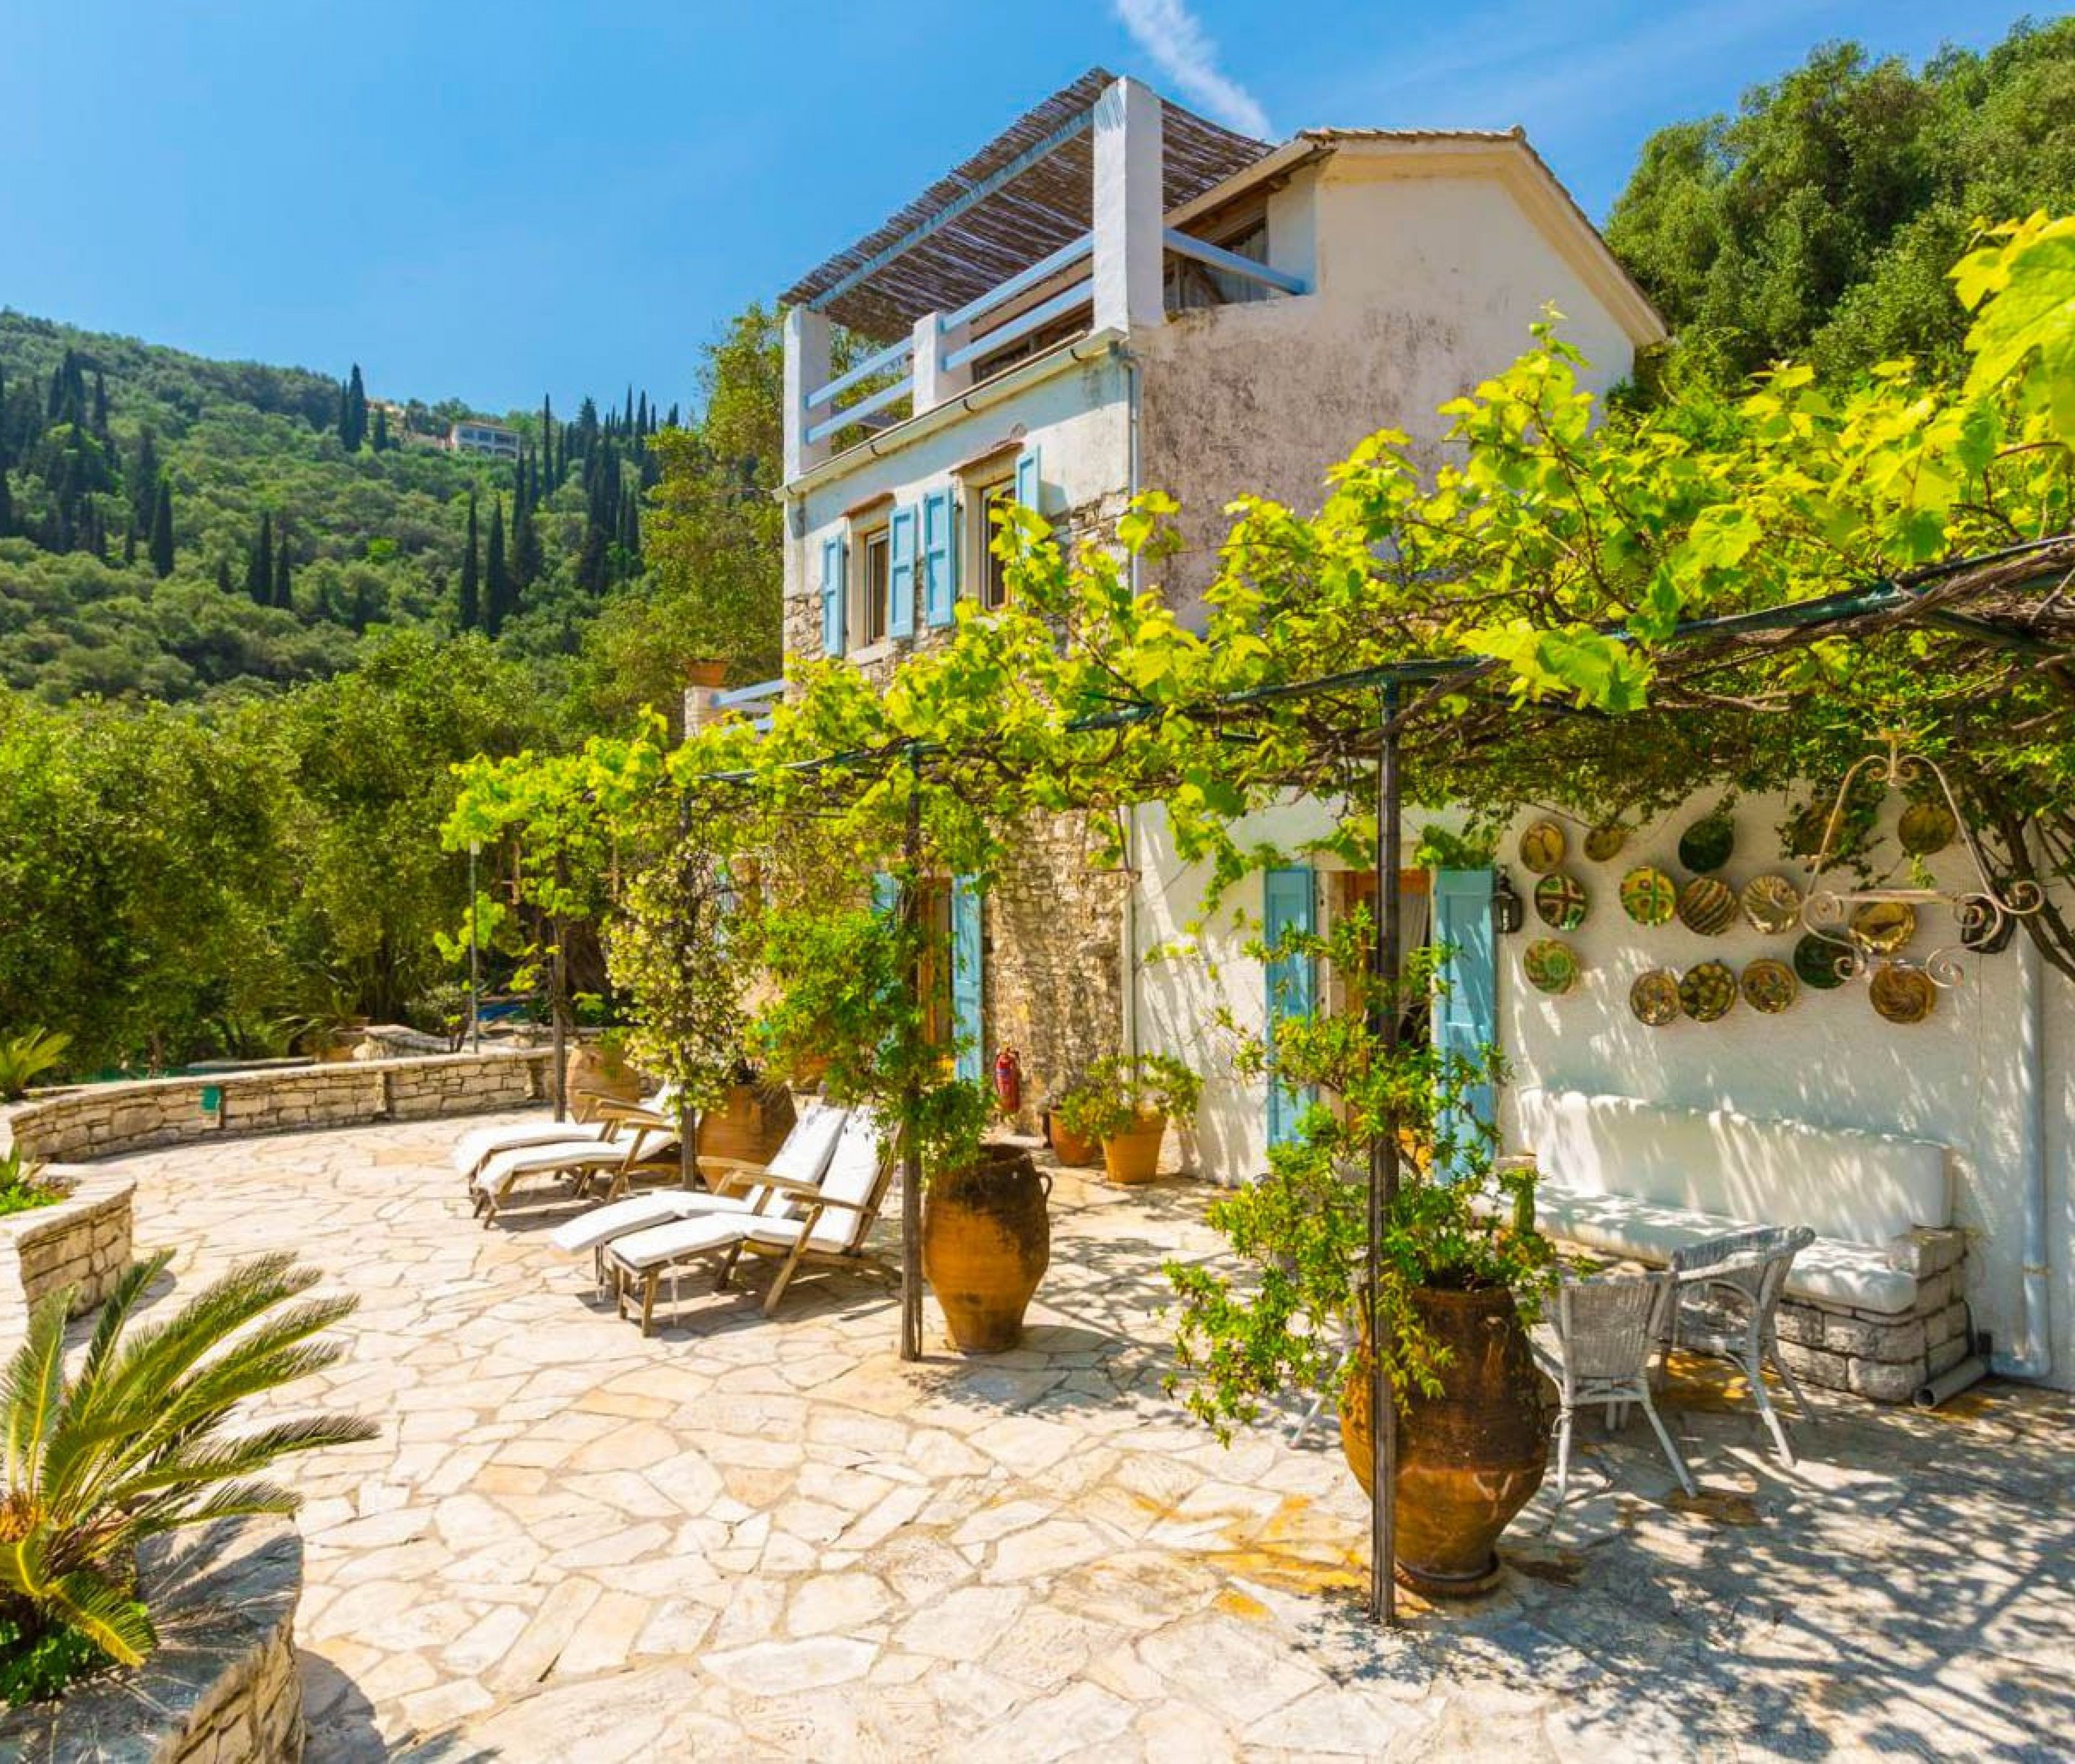 Corfu villas - The Olive Press - Agni Bay